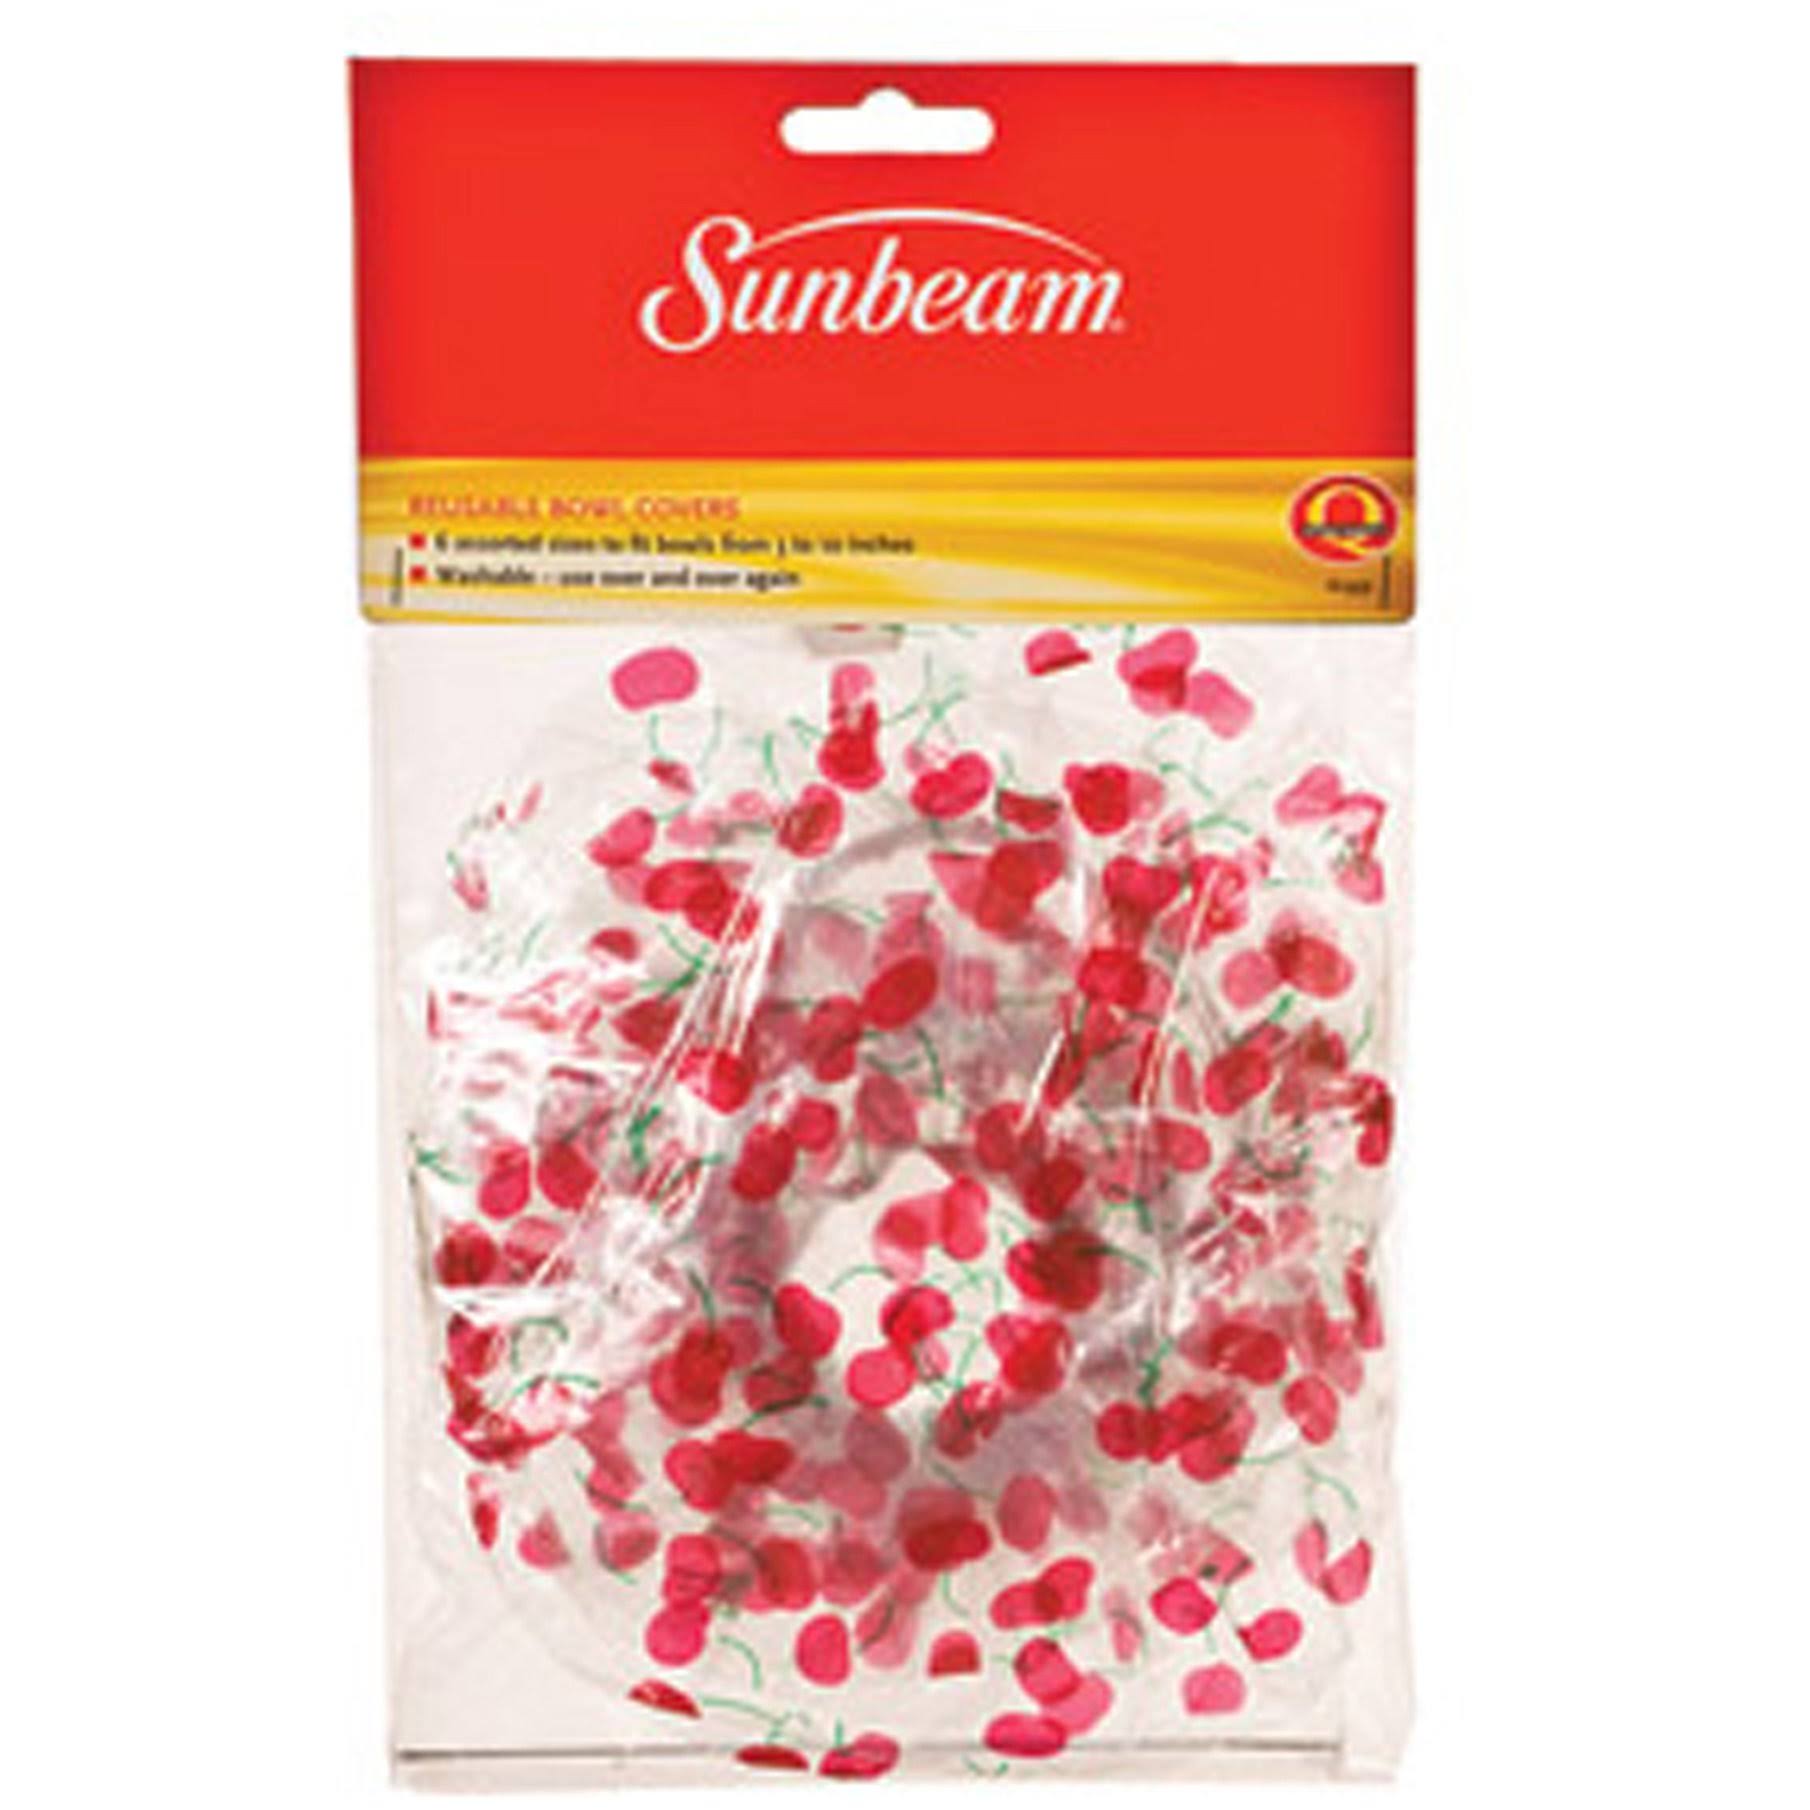 Sunbeam Bowl Covers - 1 Set